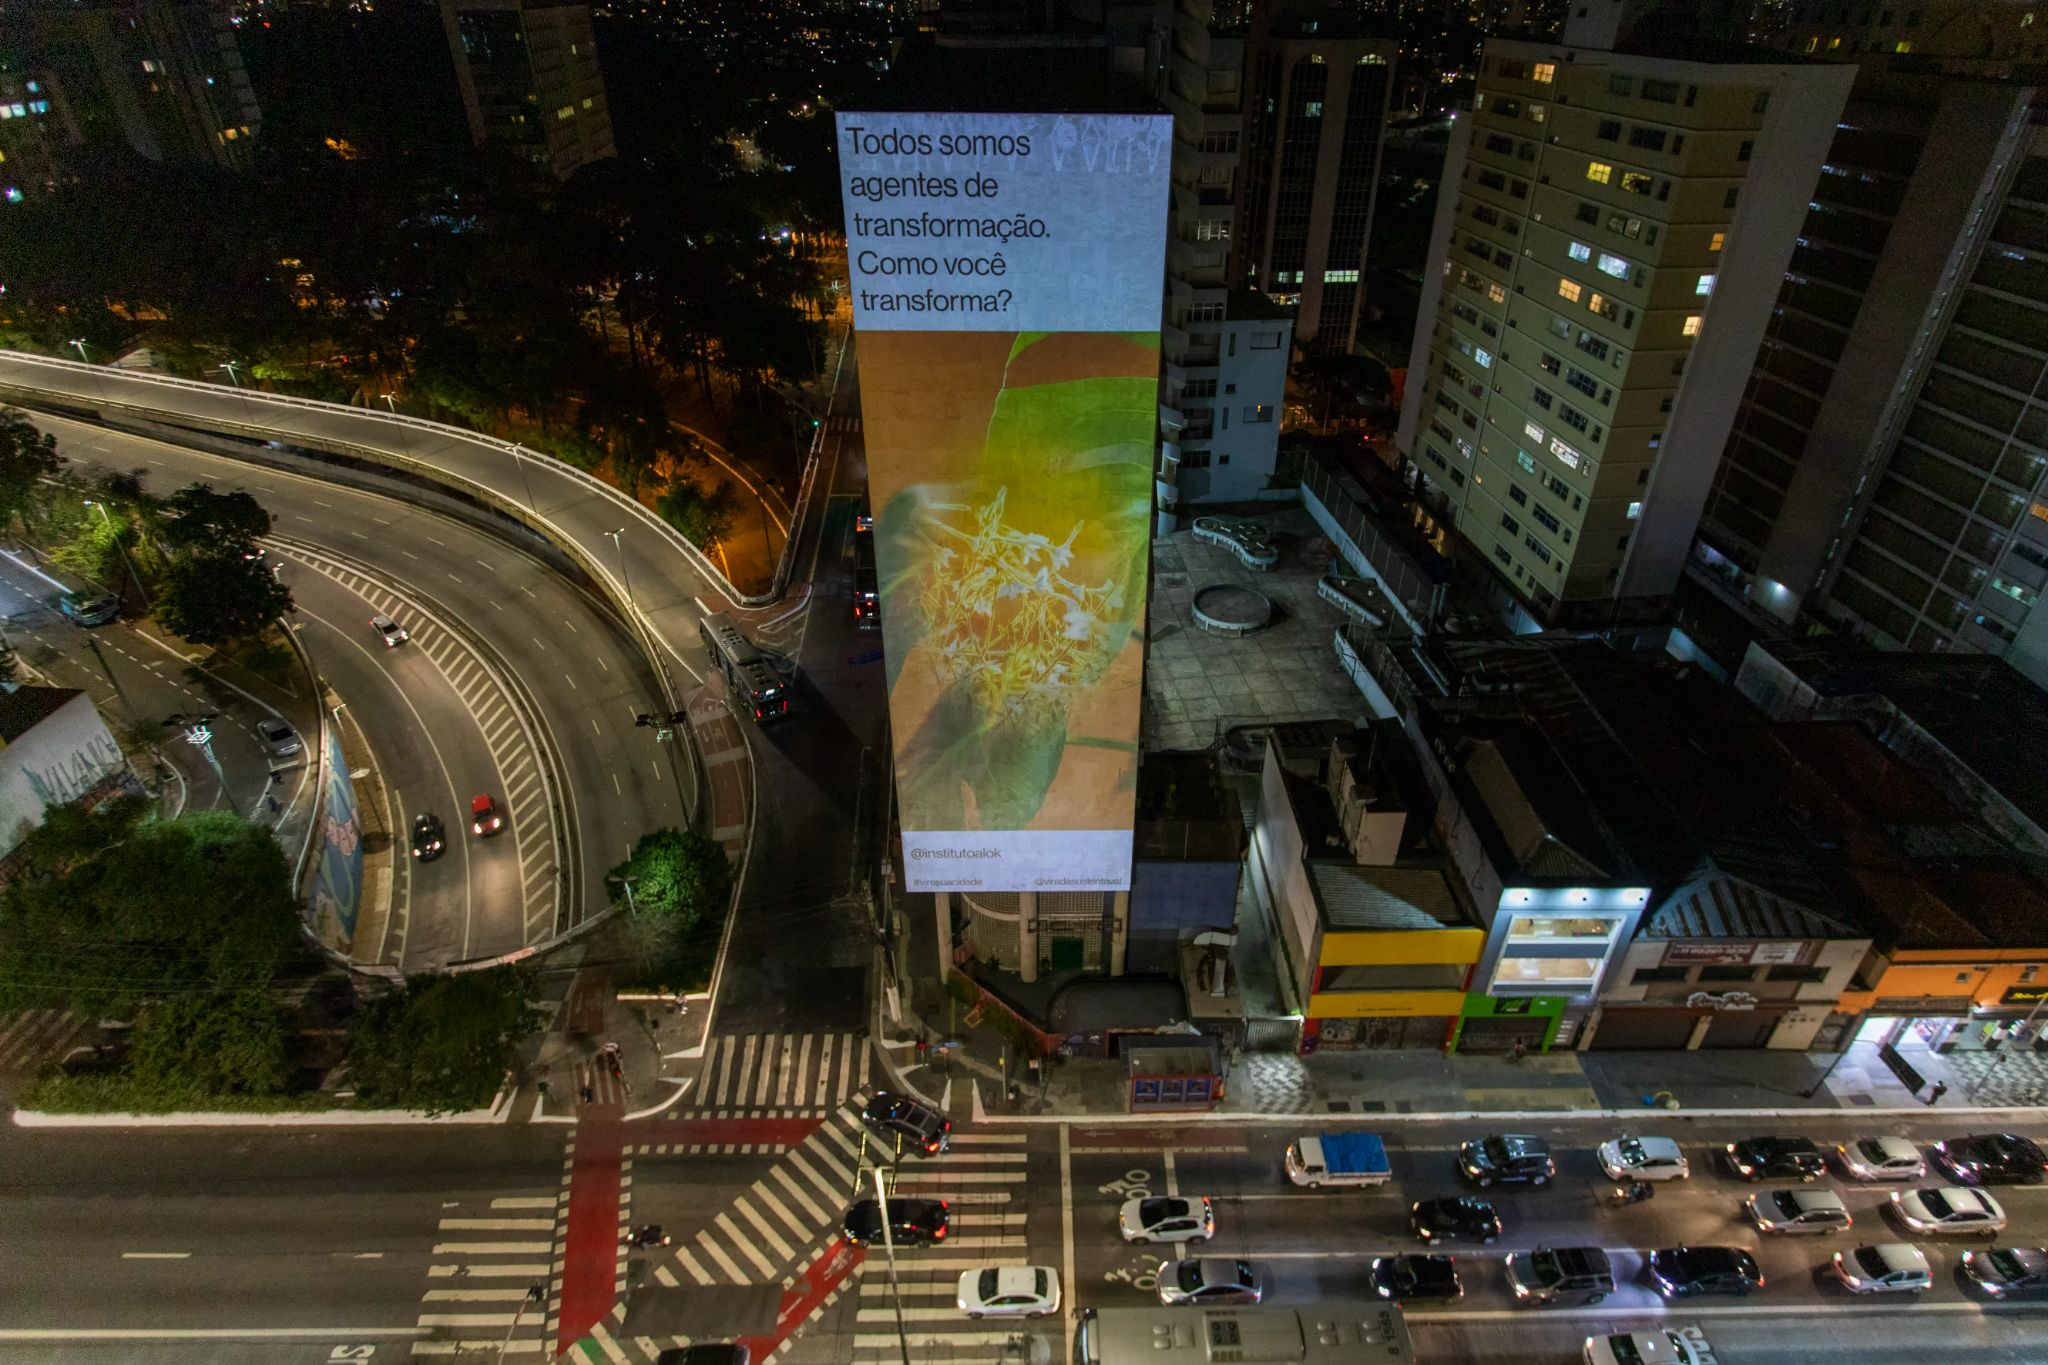 Projeção em empena de prédio na região da Avenida Paulista na Virada Sustentável 2021